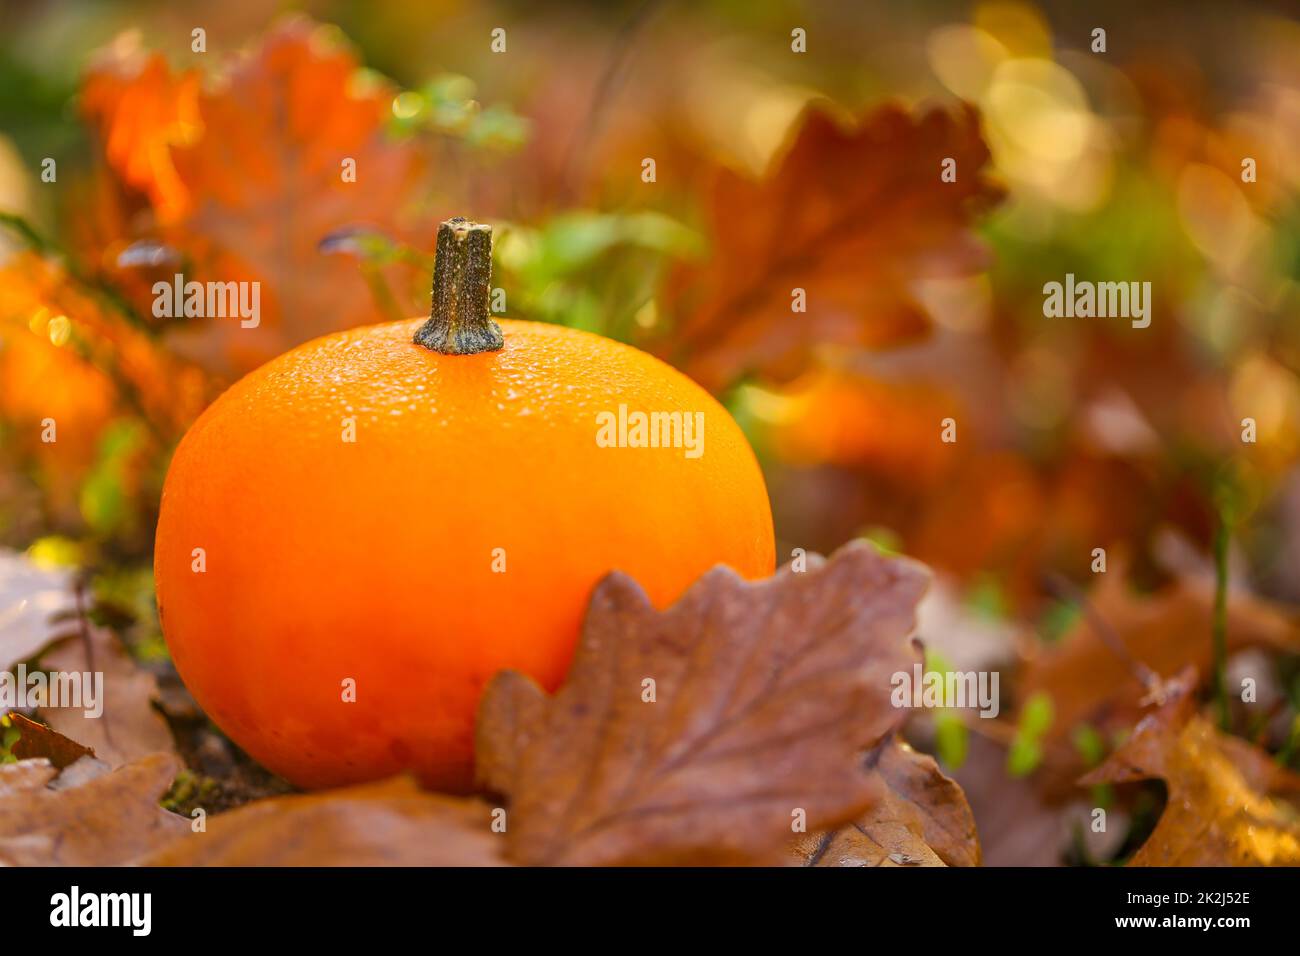 Herbstzeit. Orange Kürbis mit braunen Eichenblättern auf einem Stumpf. Kürbis im Herbst braune Blätter. Herbstwetter.schöne Naturtapete. Stockfoto